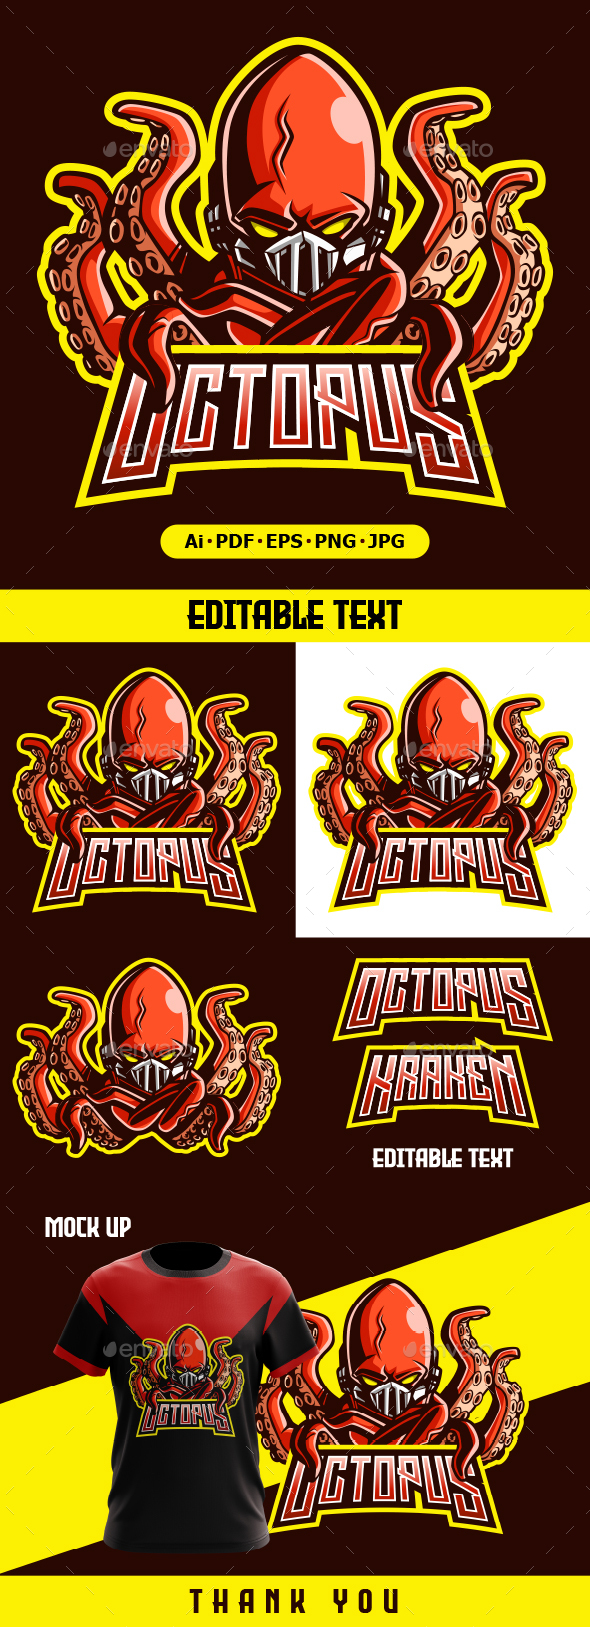 Octopus Mascot logo illustration